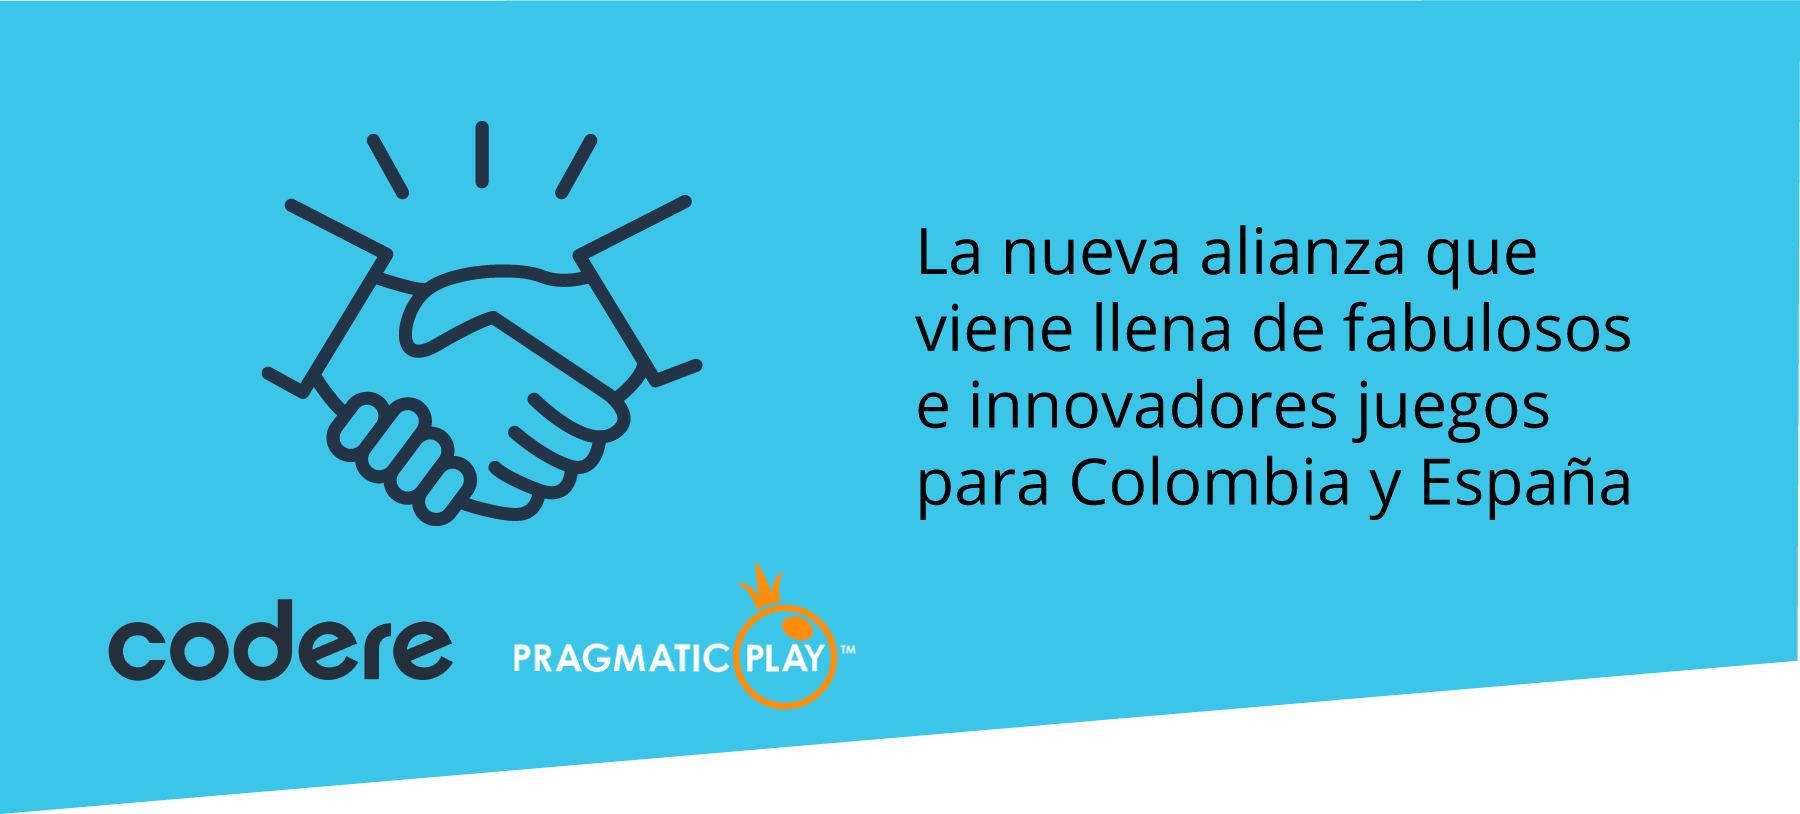 Pragmatic Play y Codere expanden su acuerdo a Colombia y España